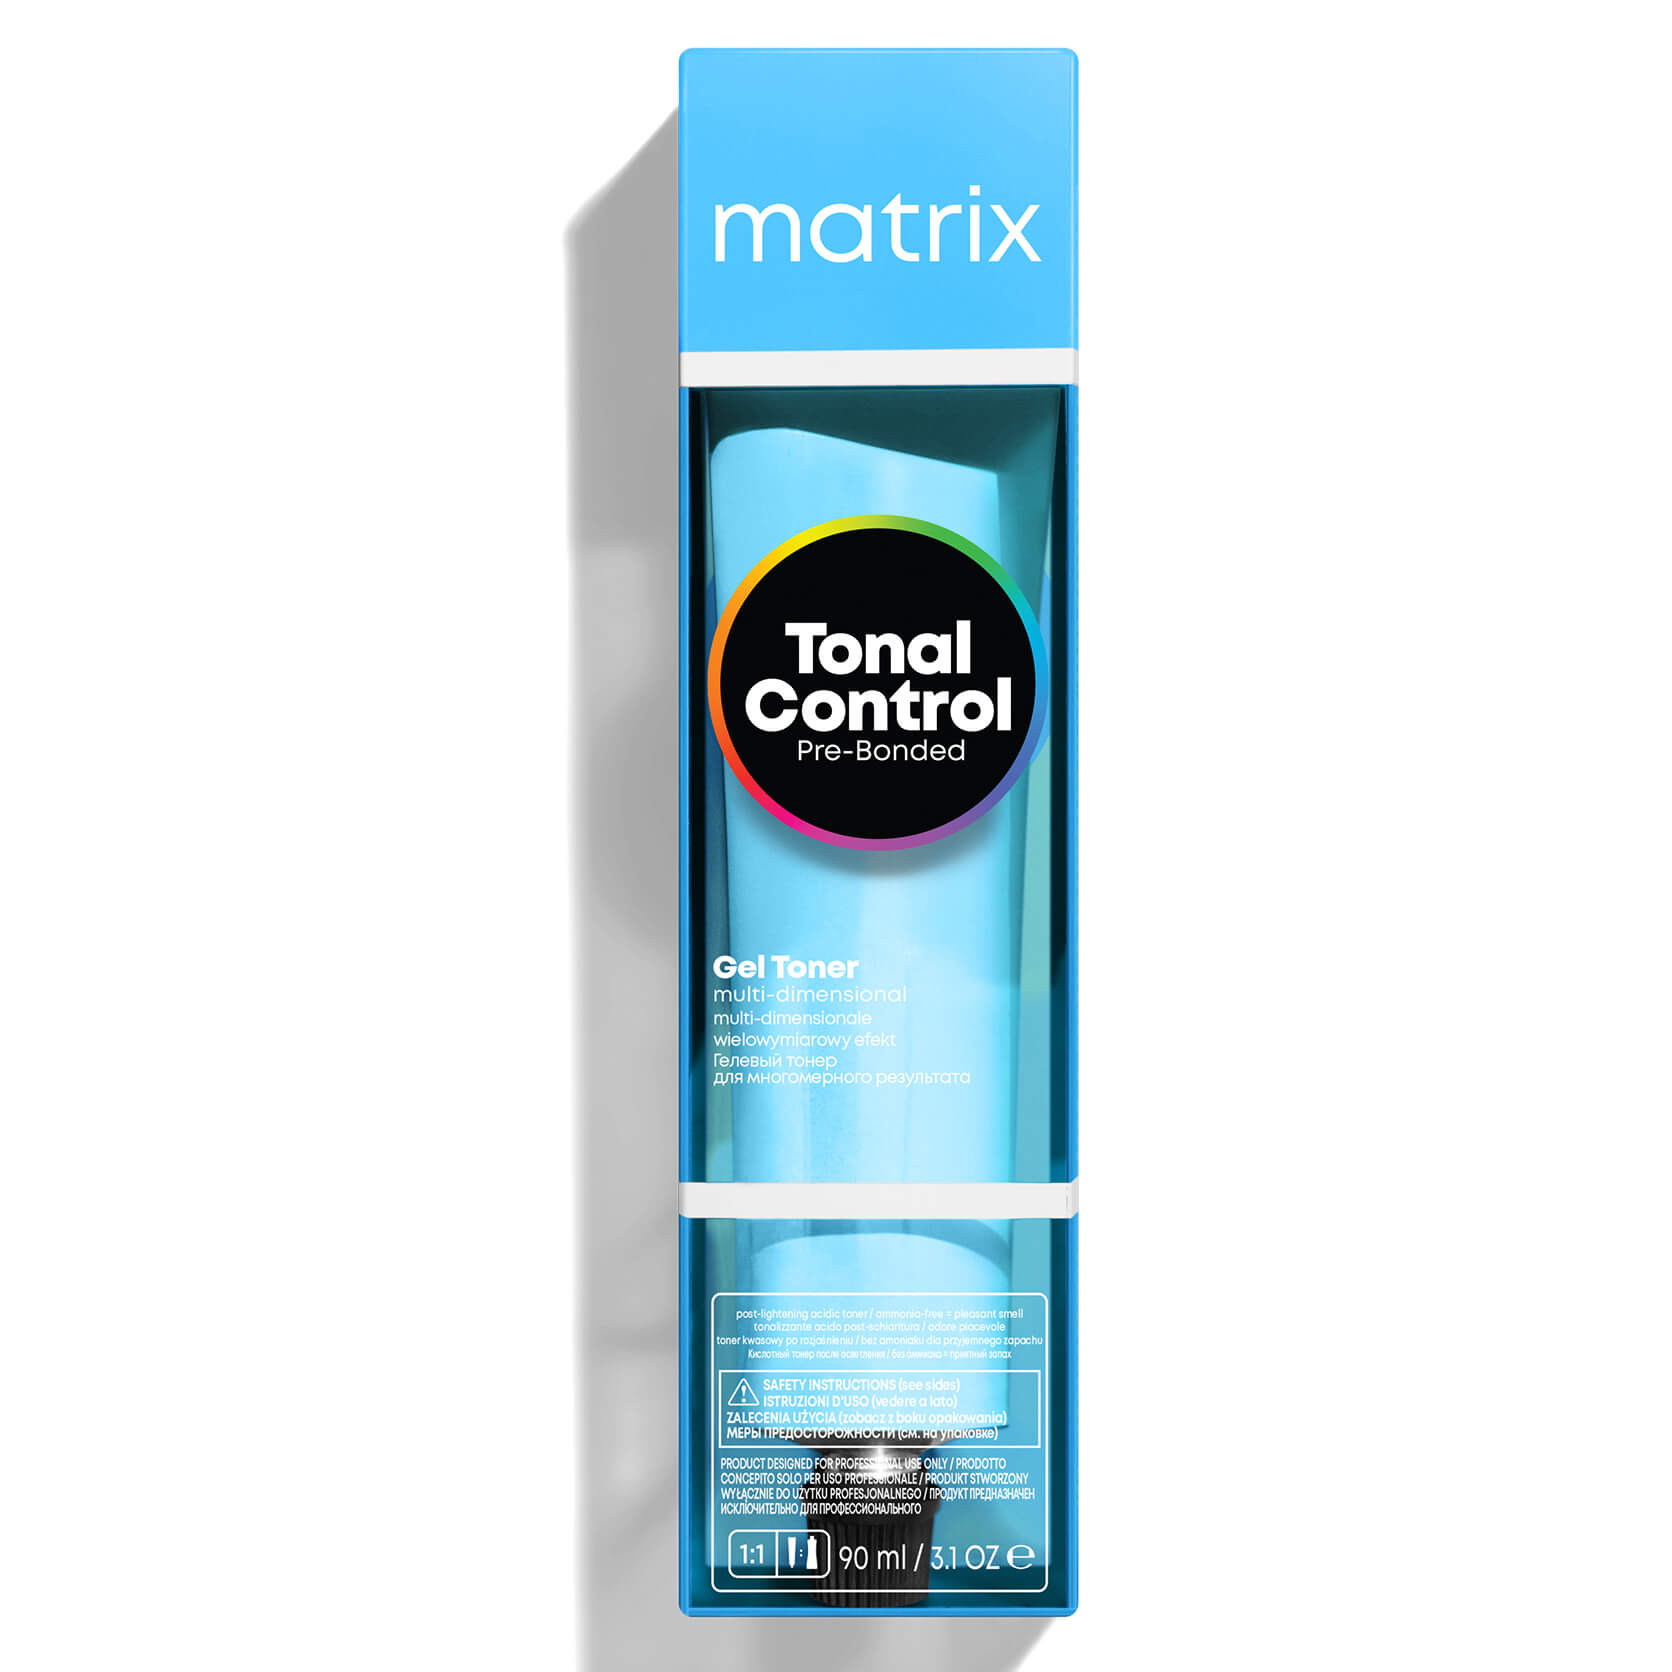 Matrix Tonal Control Pre-Bonded Gel Toner - 6A 90ml